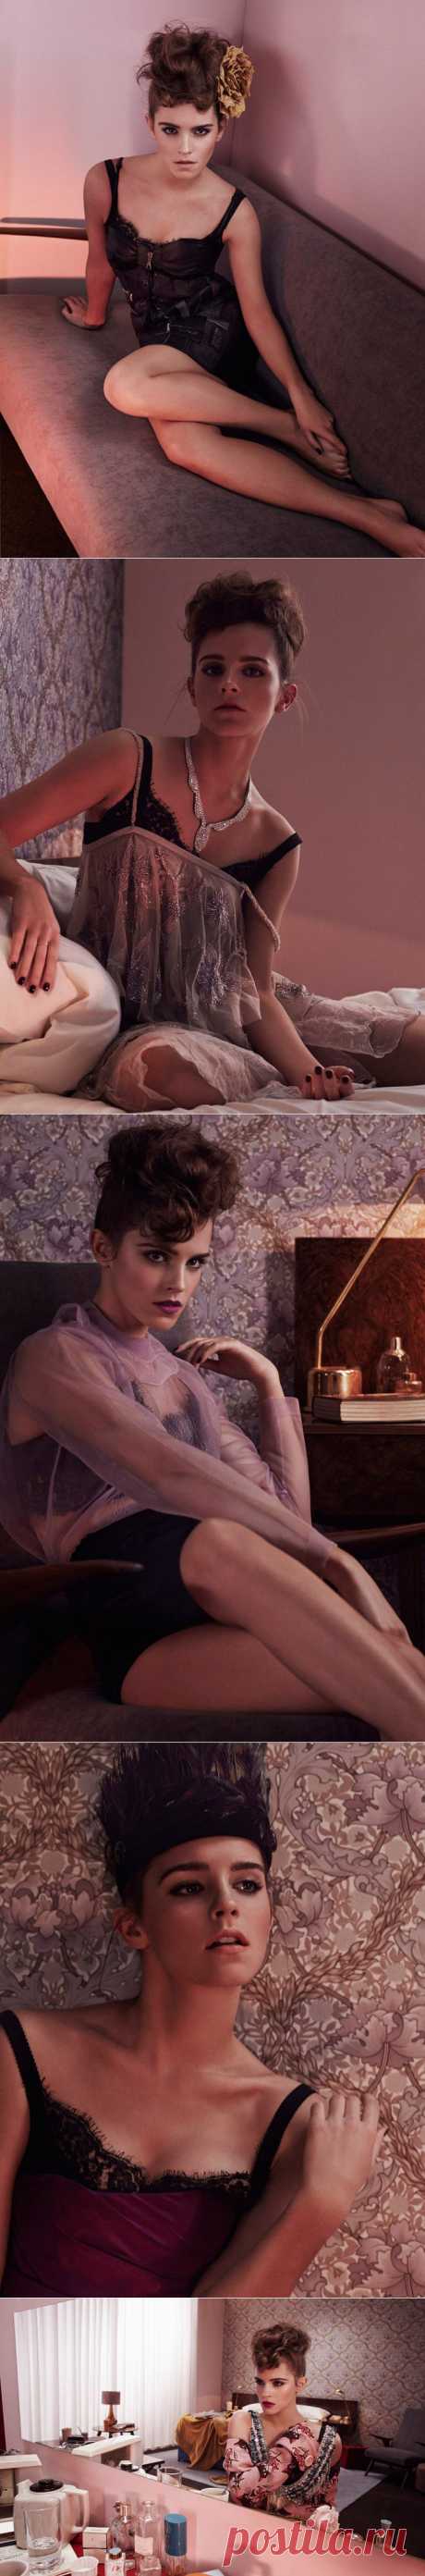 Эмма Уотсон (Emma Watson) – Фотосессия для журнала Wonderland (февраль 2014) | Starer - Фотосессии знаменитостей